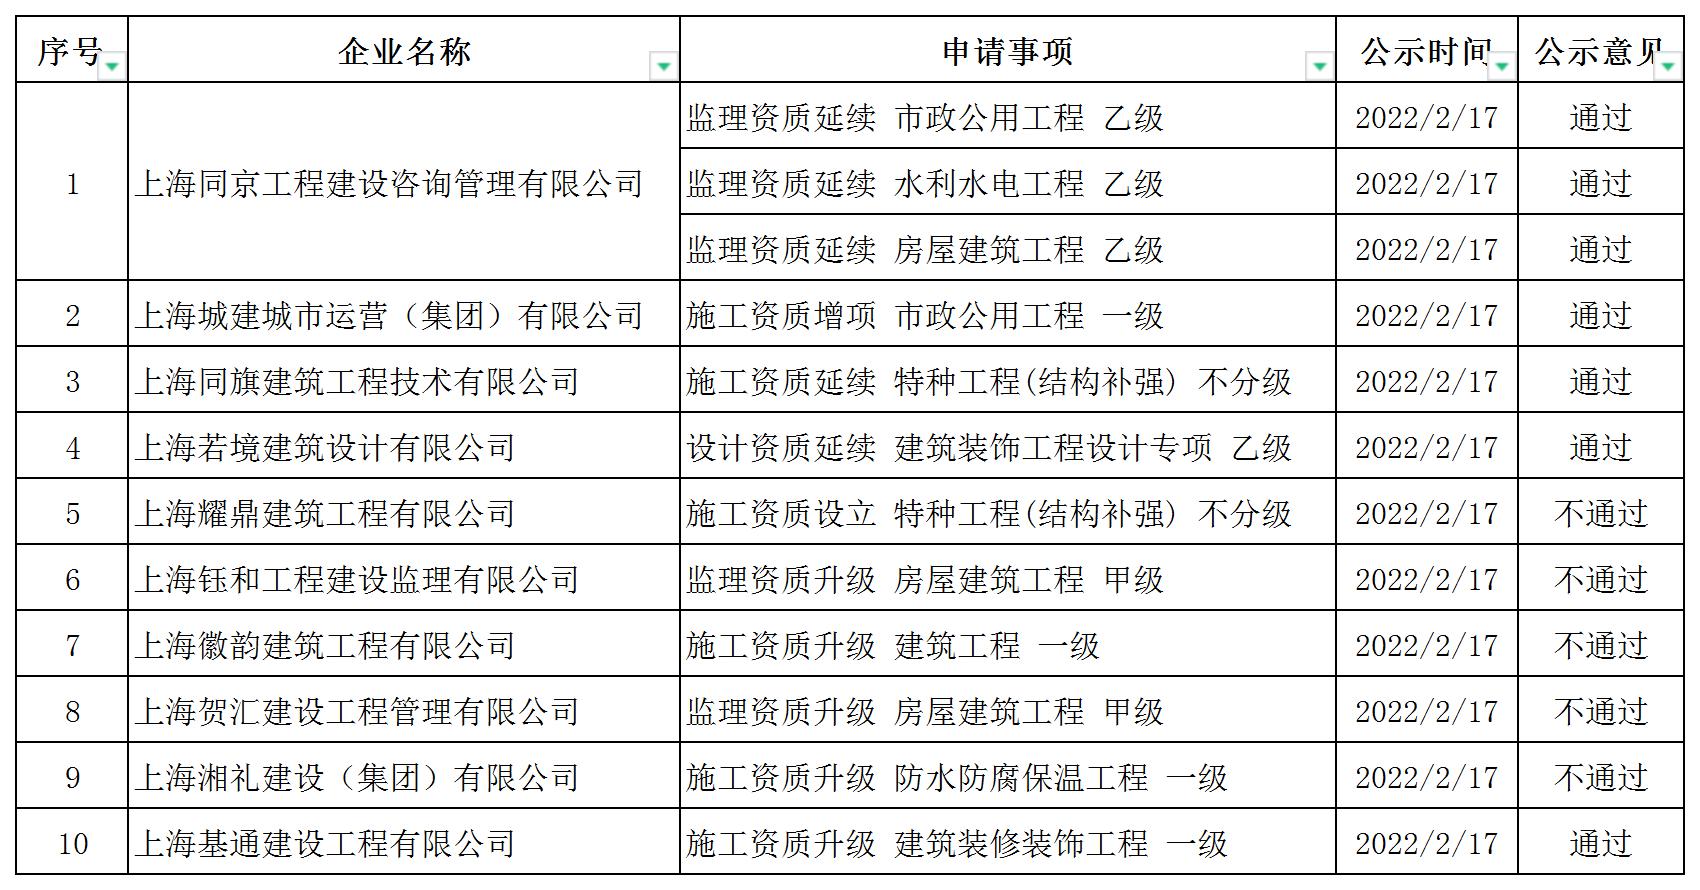 上海市公示公告周报_A1E13.jpg